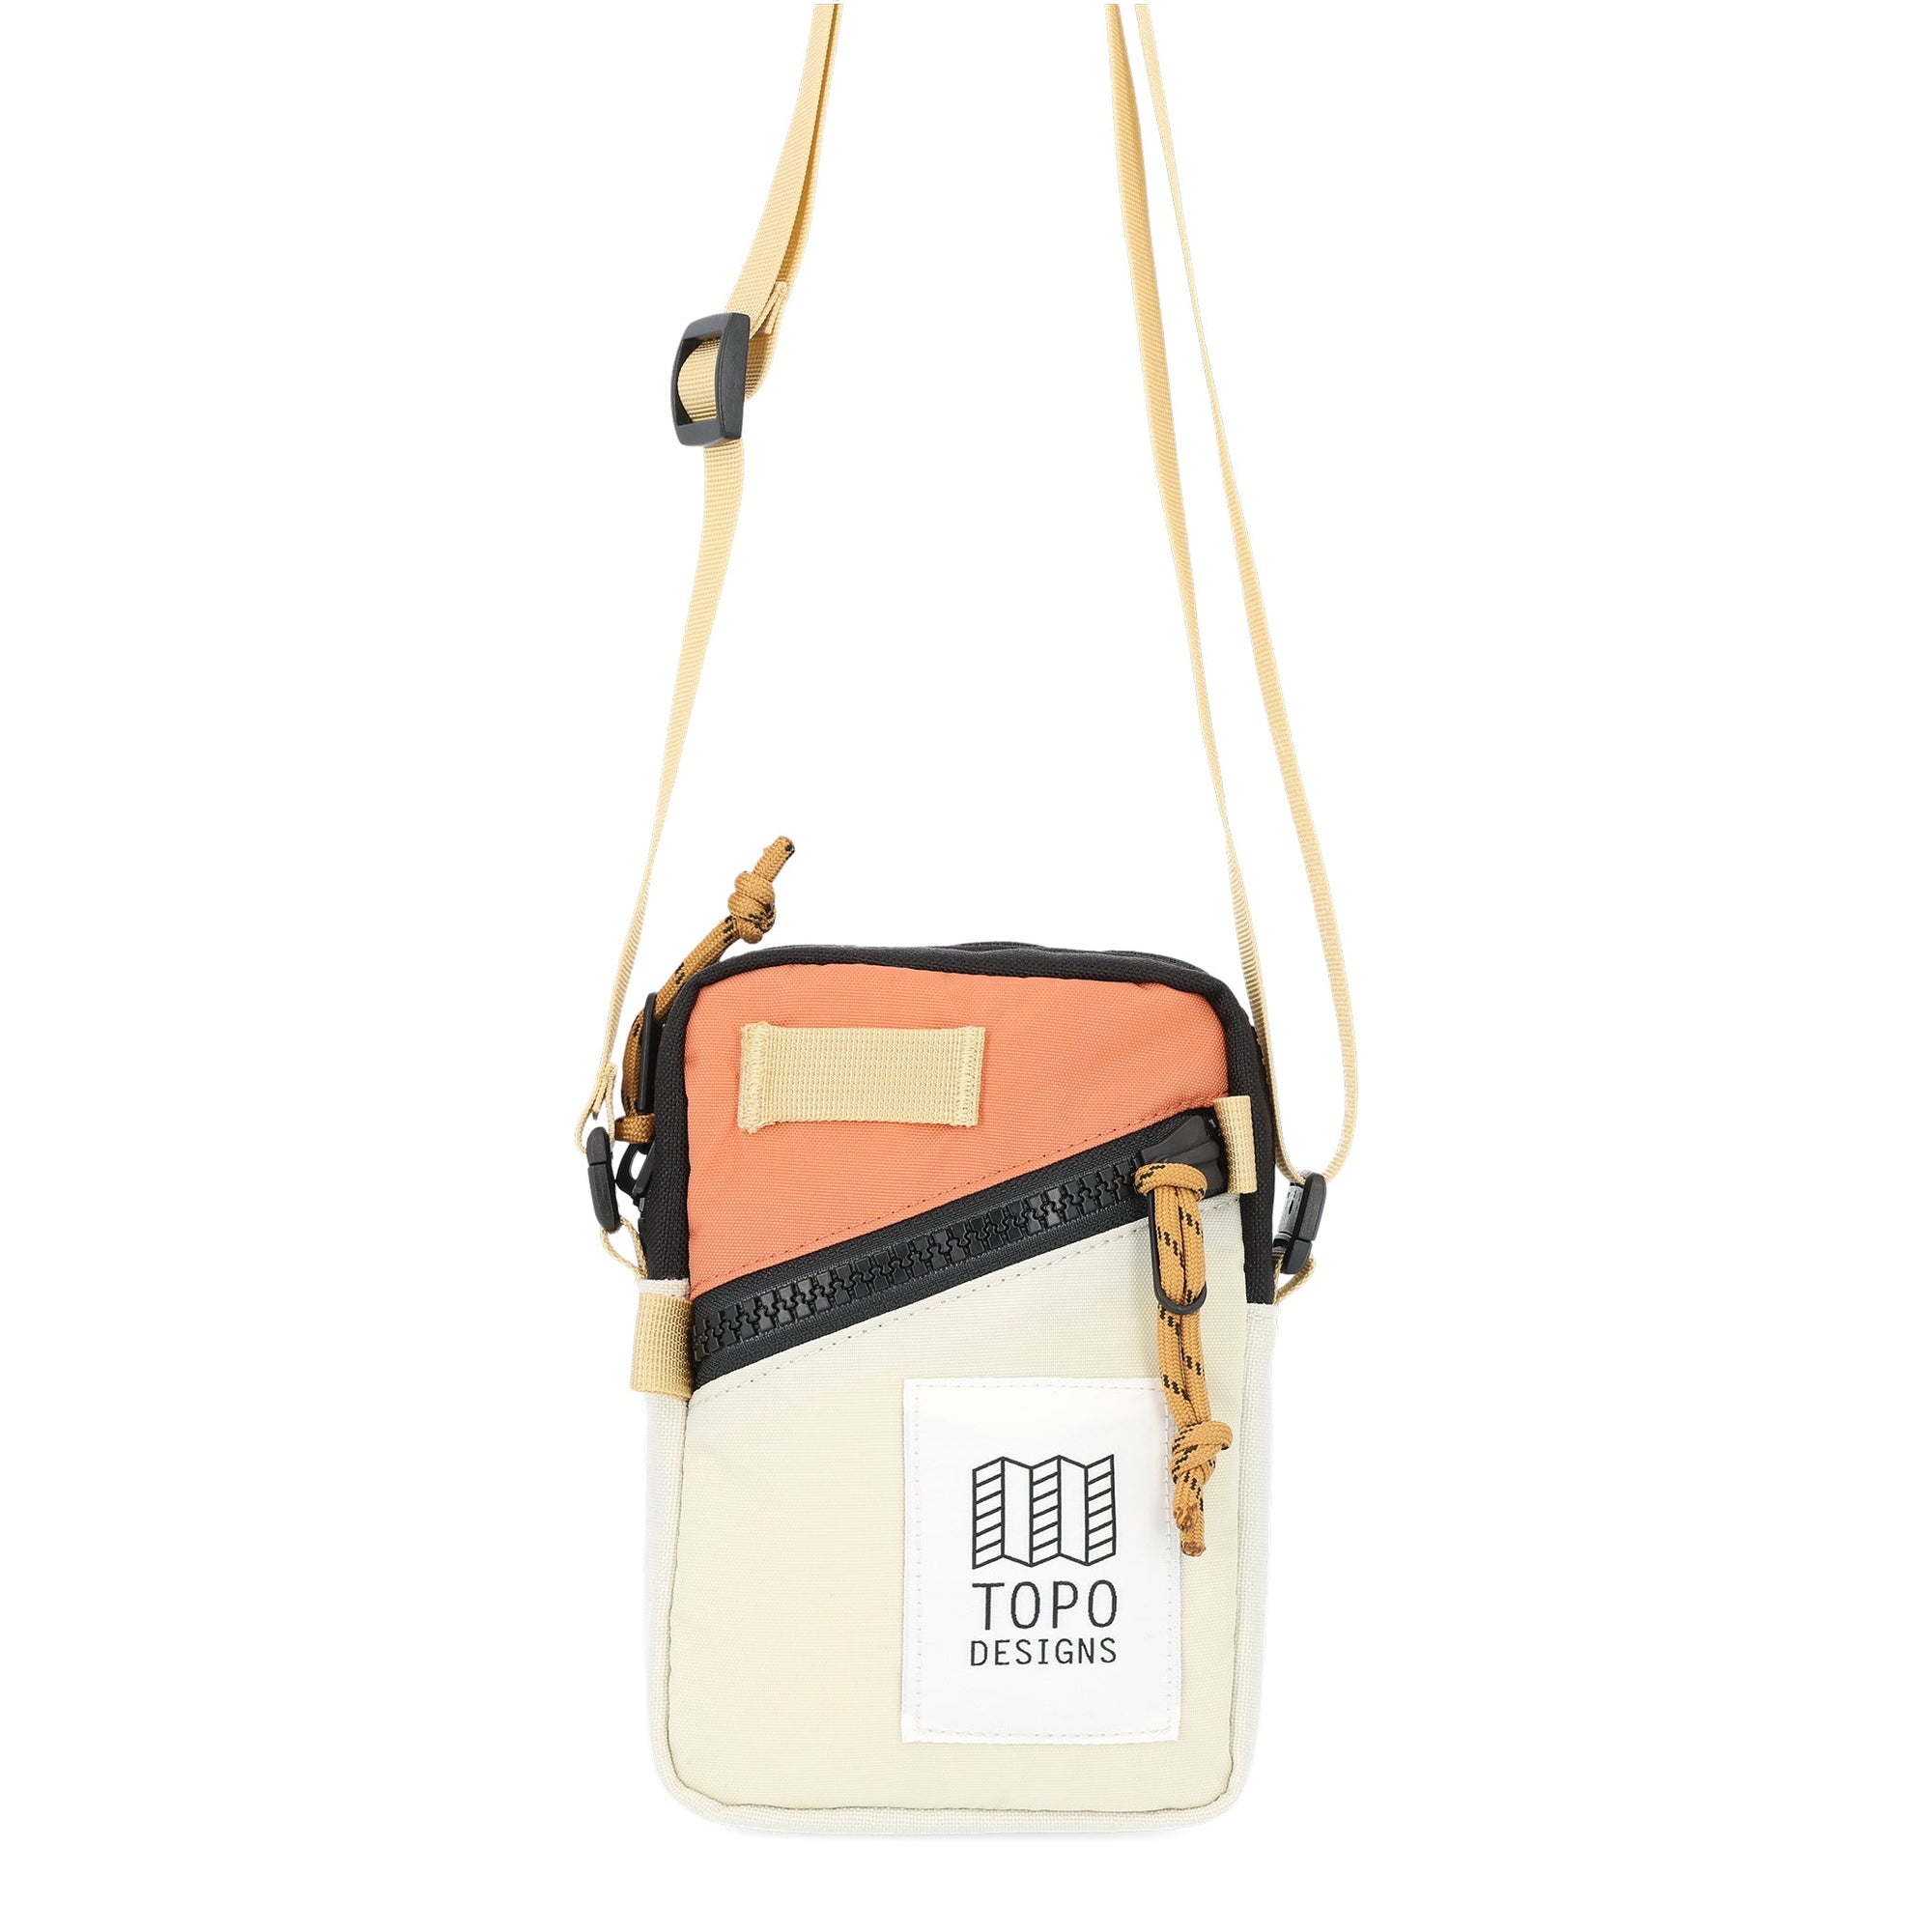 Topo Designs Mini Shoulder Bag Bone White/Coral bags Topo Designs 